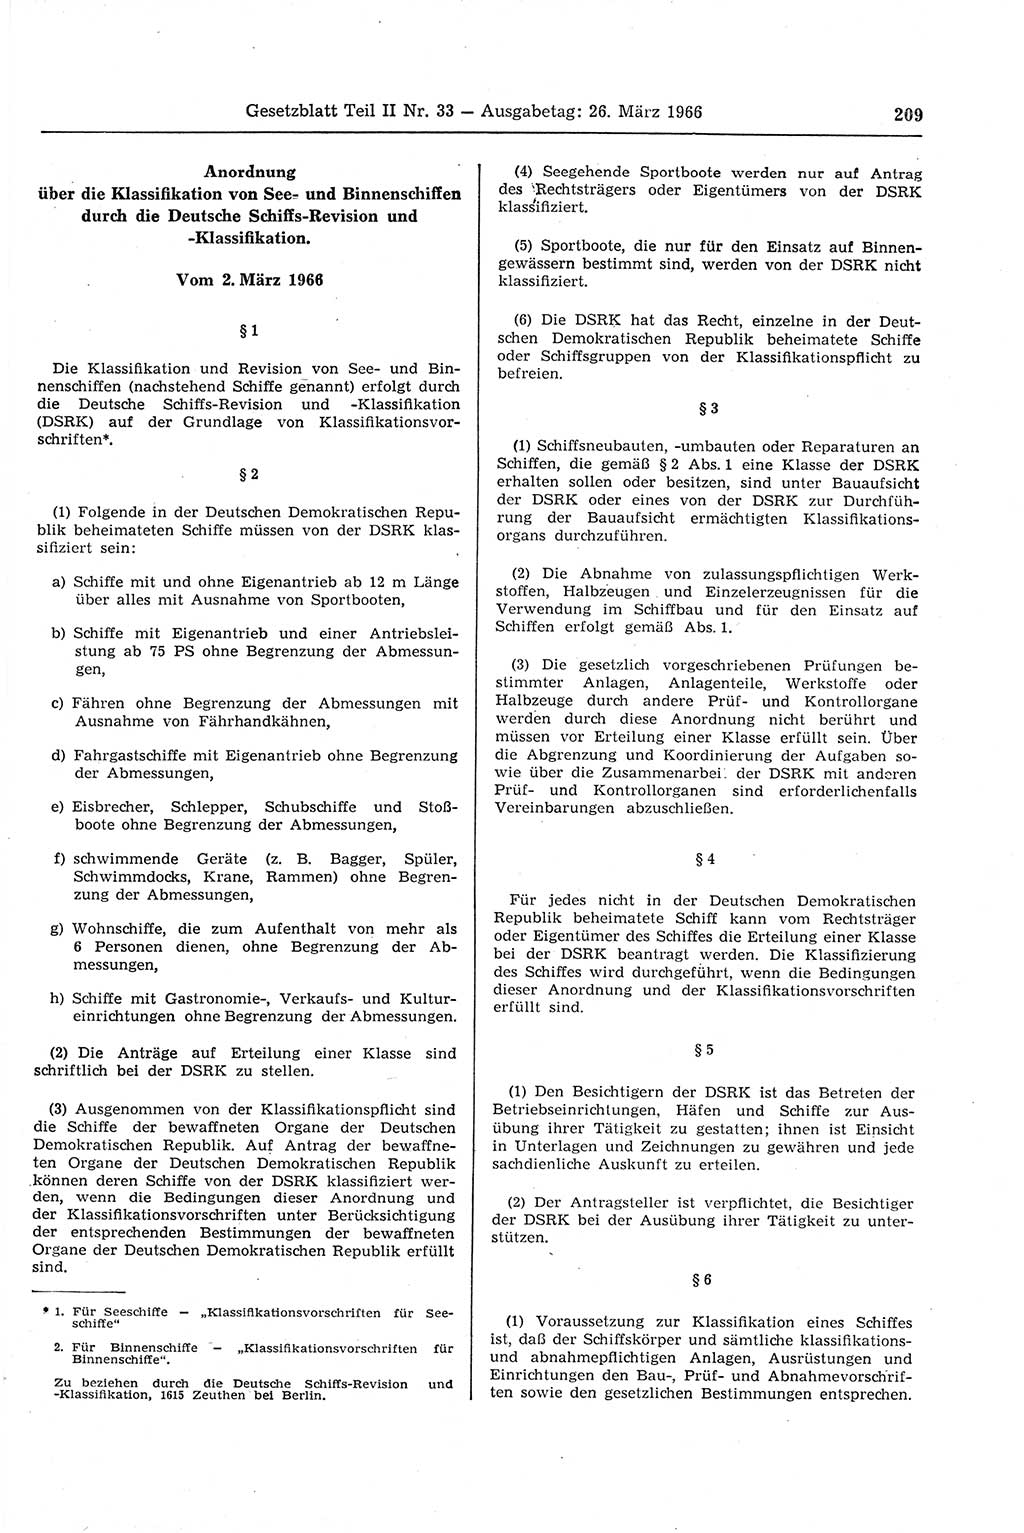 Gesetzblatt (GBl.) der Deutschen Demokratischen Republik (DDR) Teil ⅠⅠ 1966, Seite 209 (GBl. DDR ⅠⅠ 1966, S. 209)